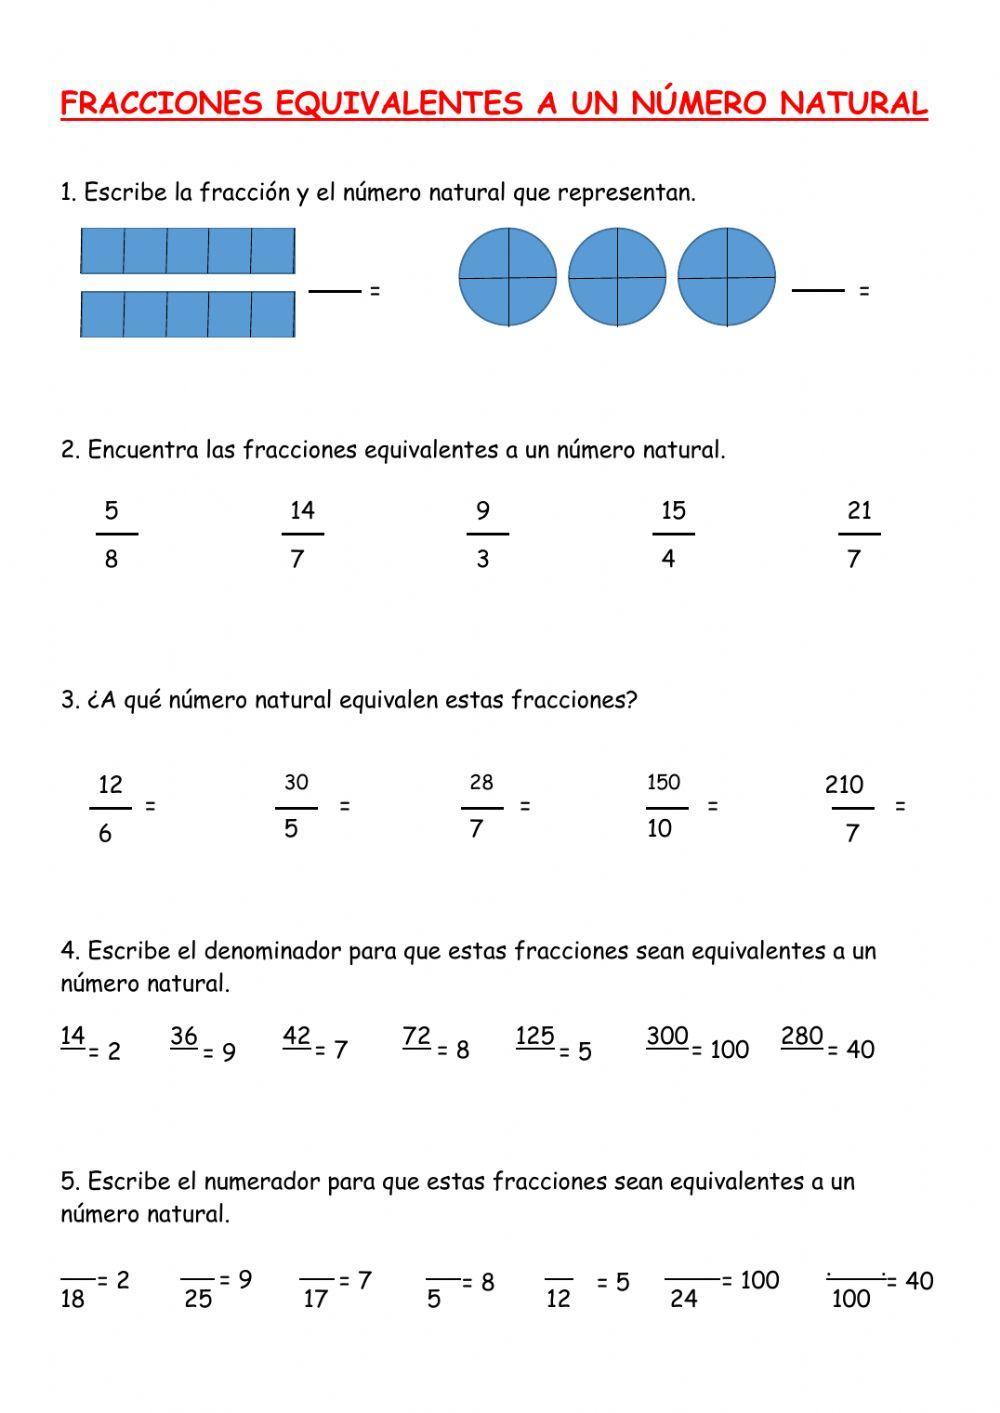 Fracciones equivalentes a un número natural